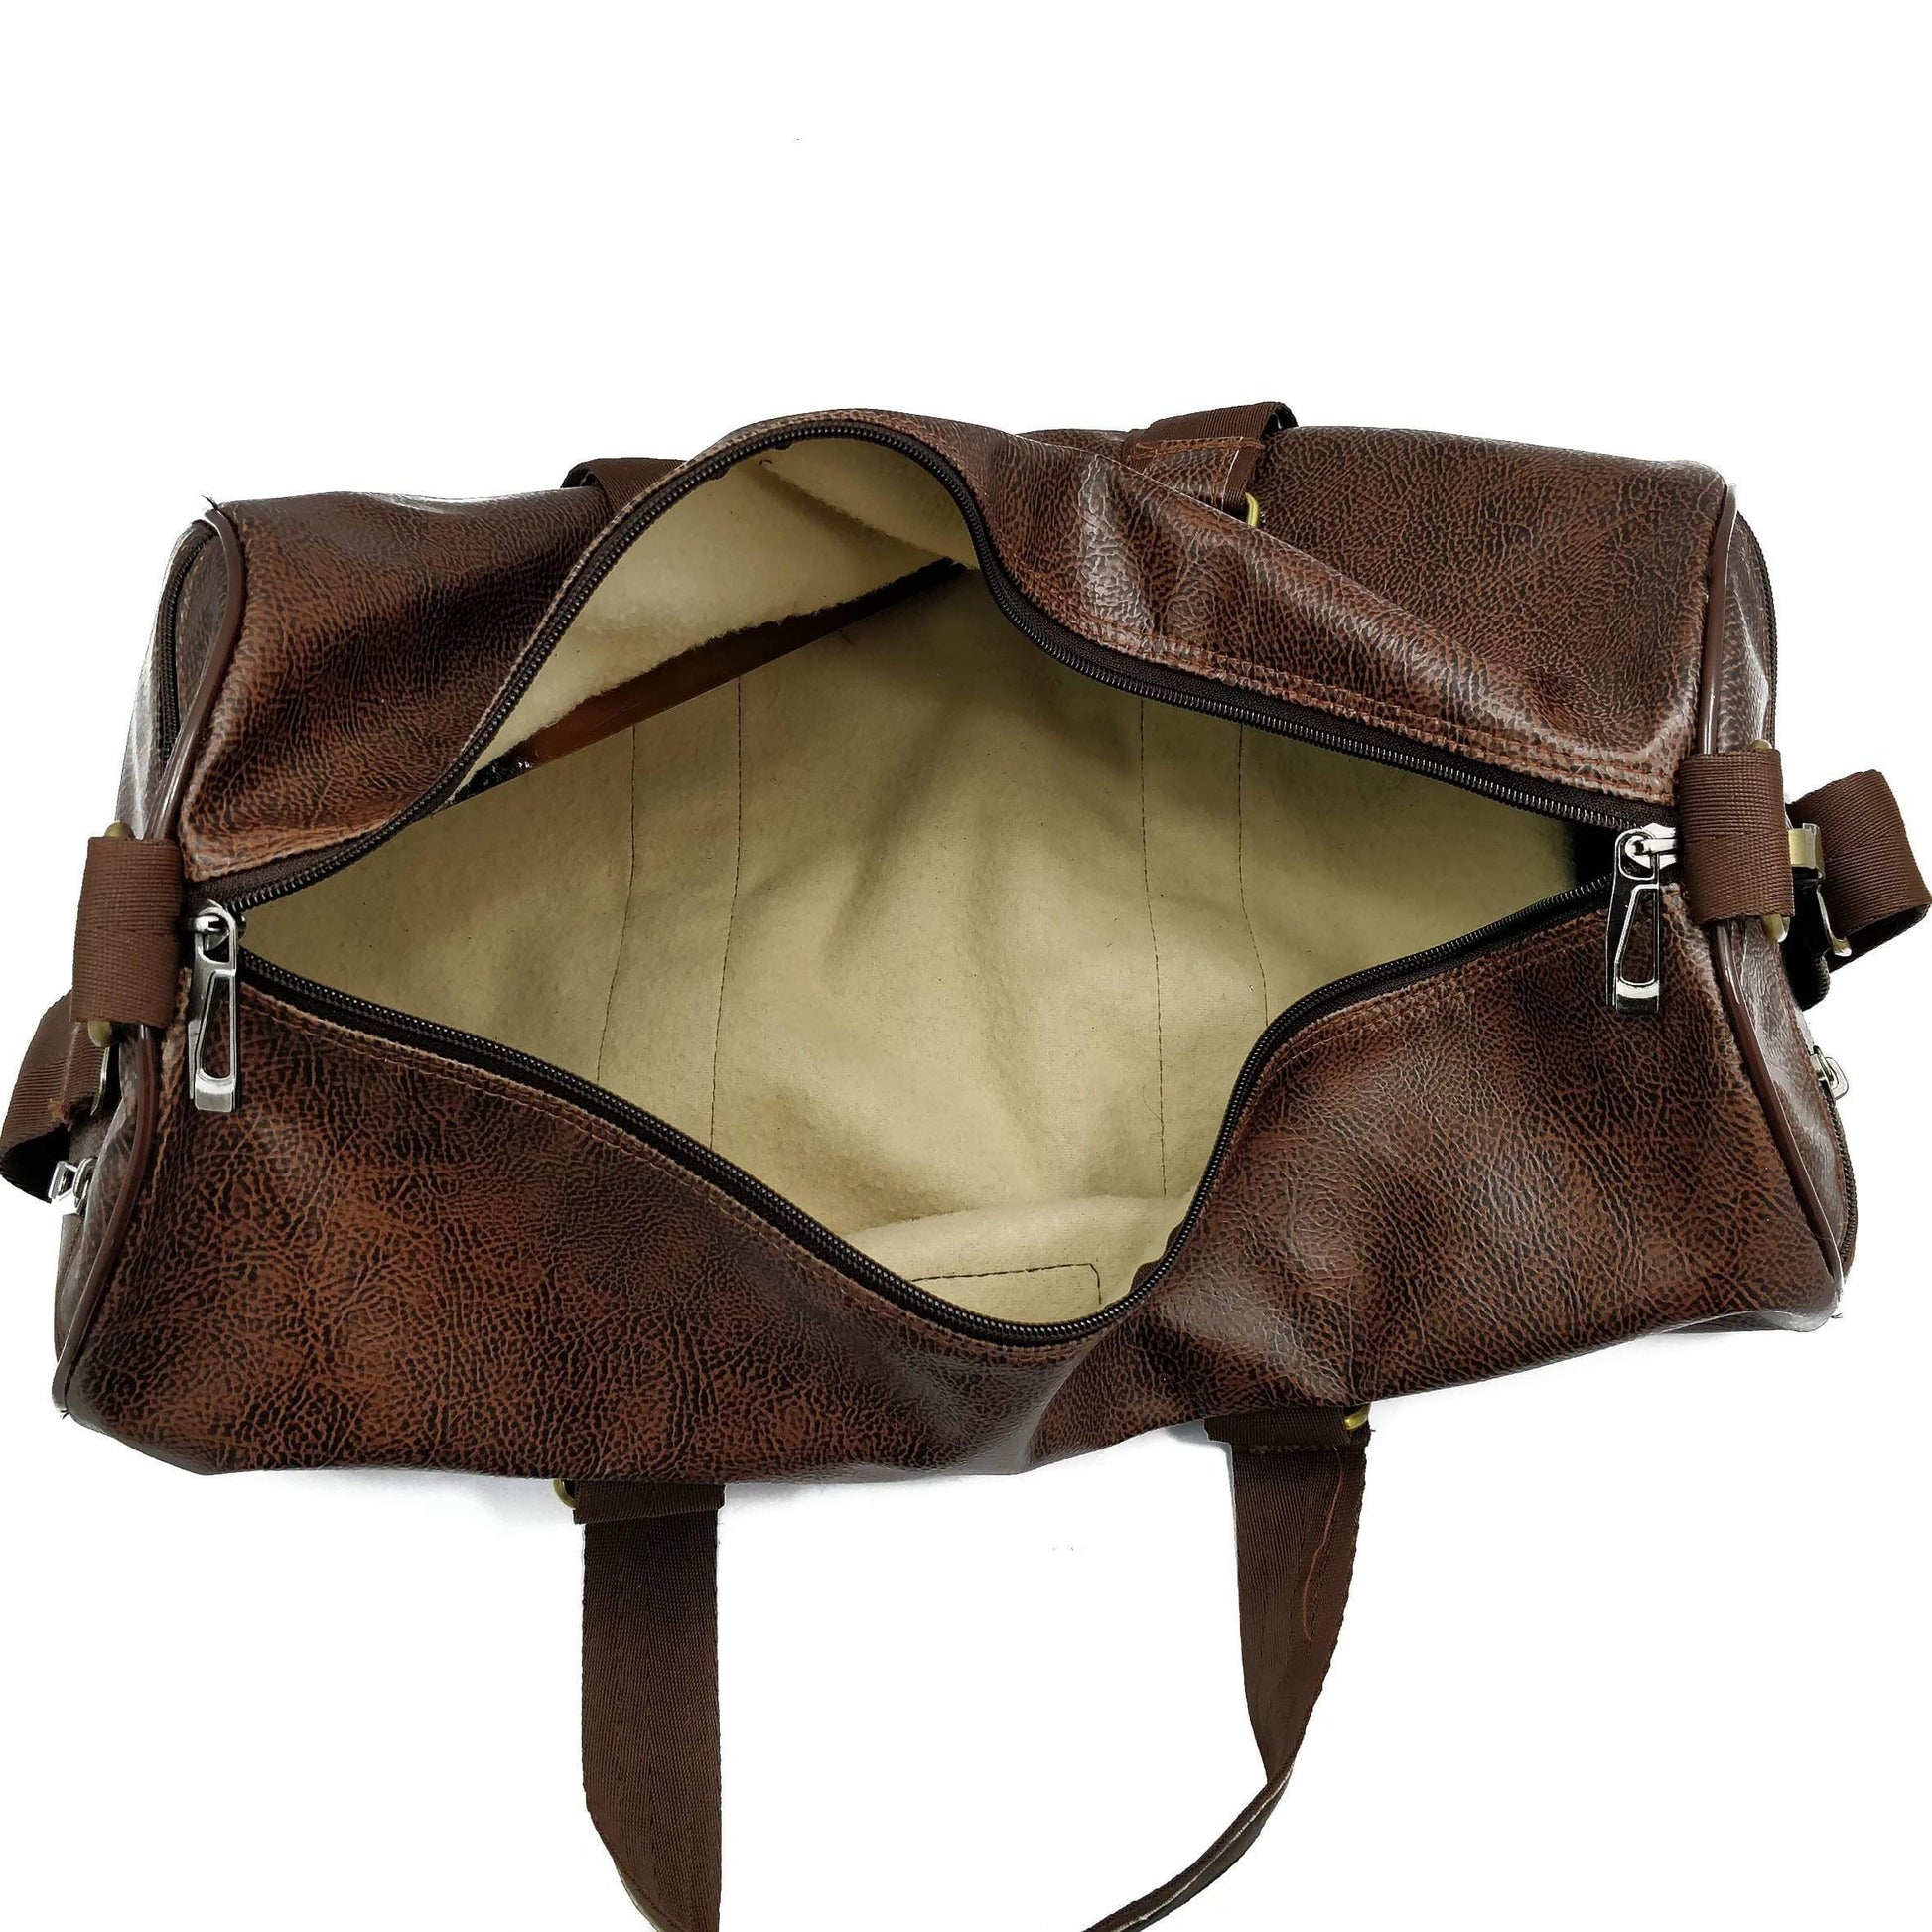 Crinds designer Crinds Multi-Purpose Leatherette Duffel Bag - Grain Brown Men Women Ladies Girls duffel bag